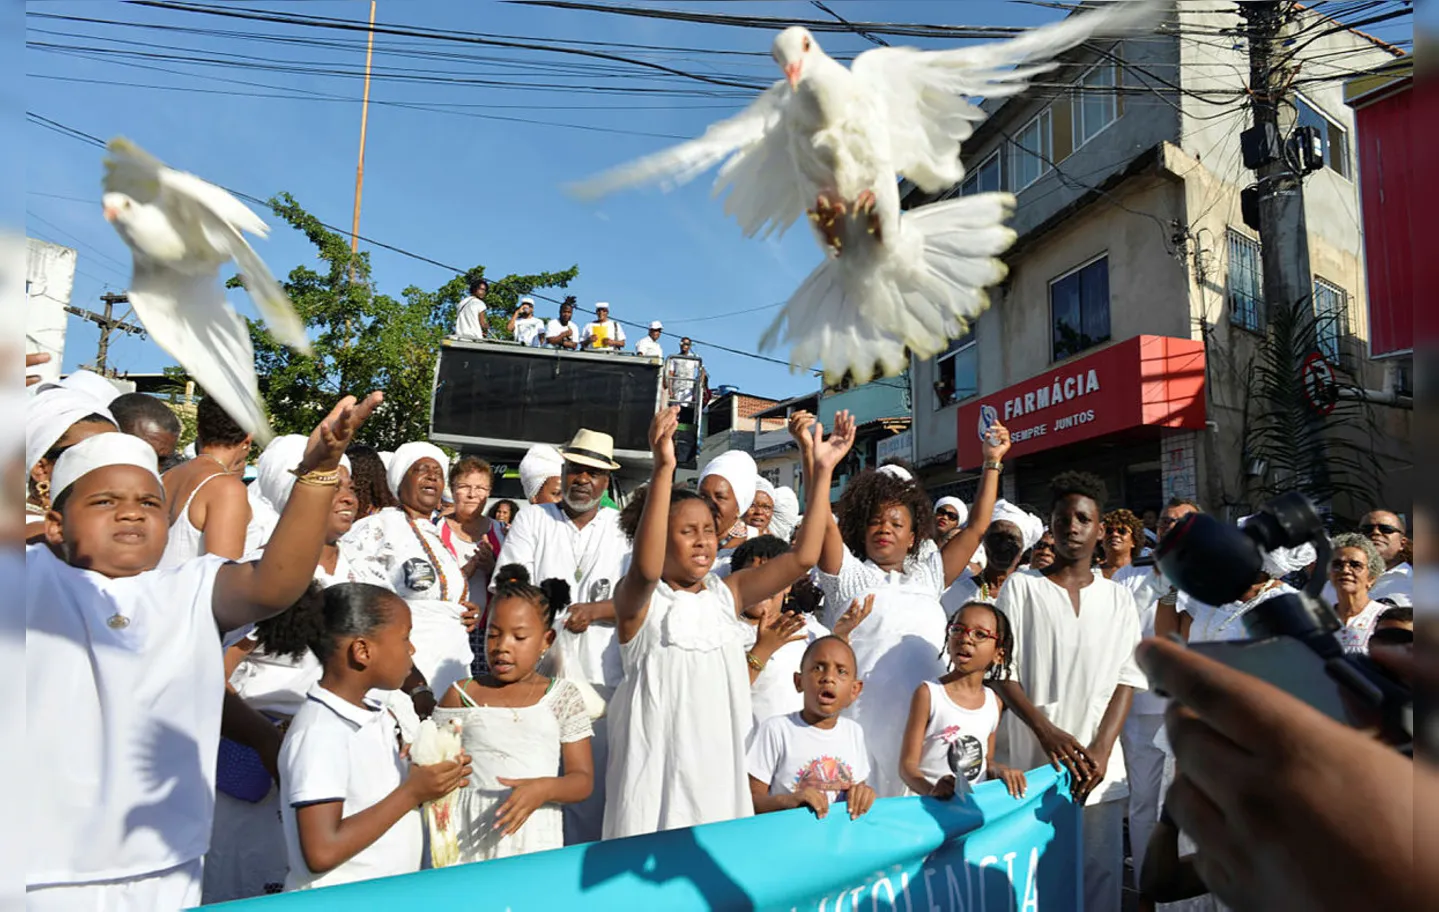 Soltura de pombos brancos simboliza a fé e a paz entre as pessoas | Foto: Shirley Stolze | Ag. A TARDE